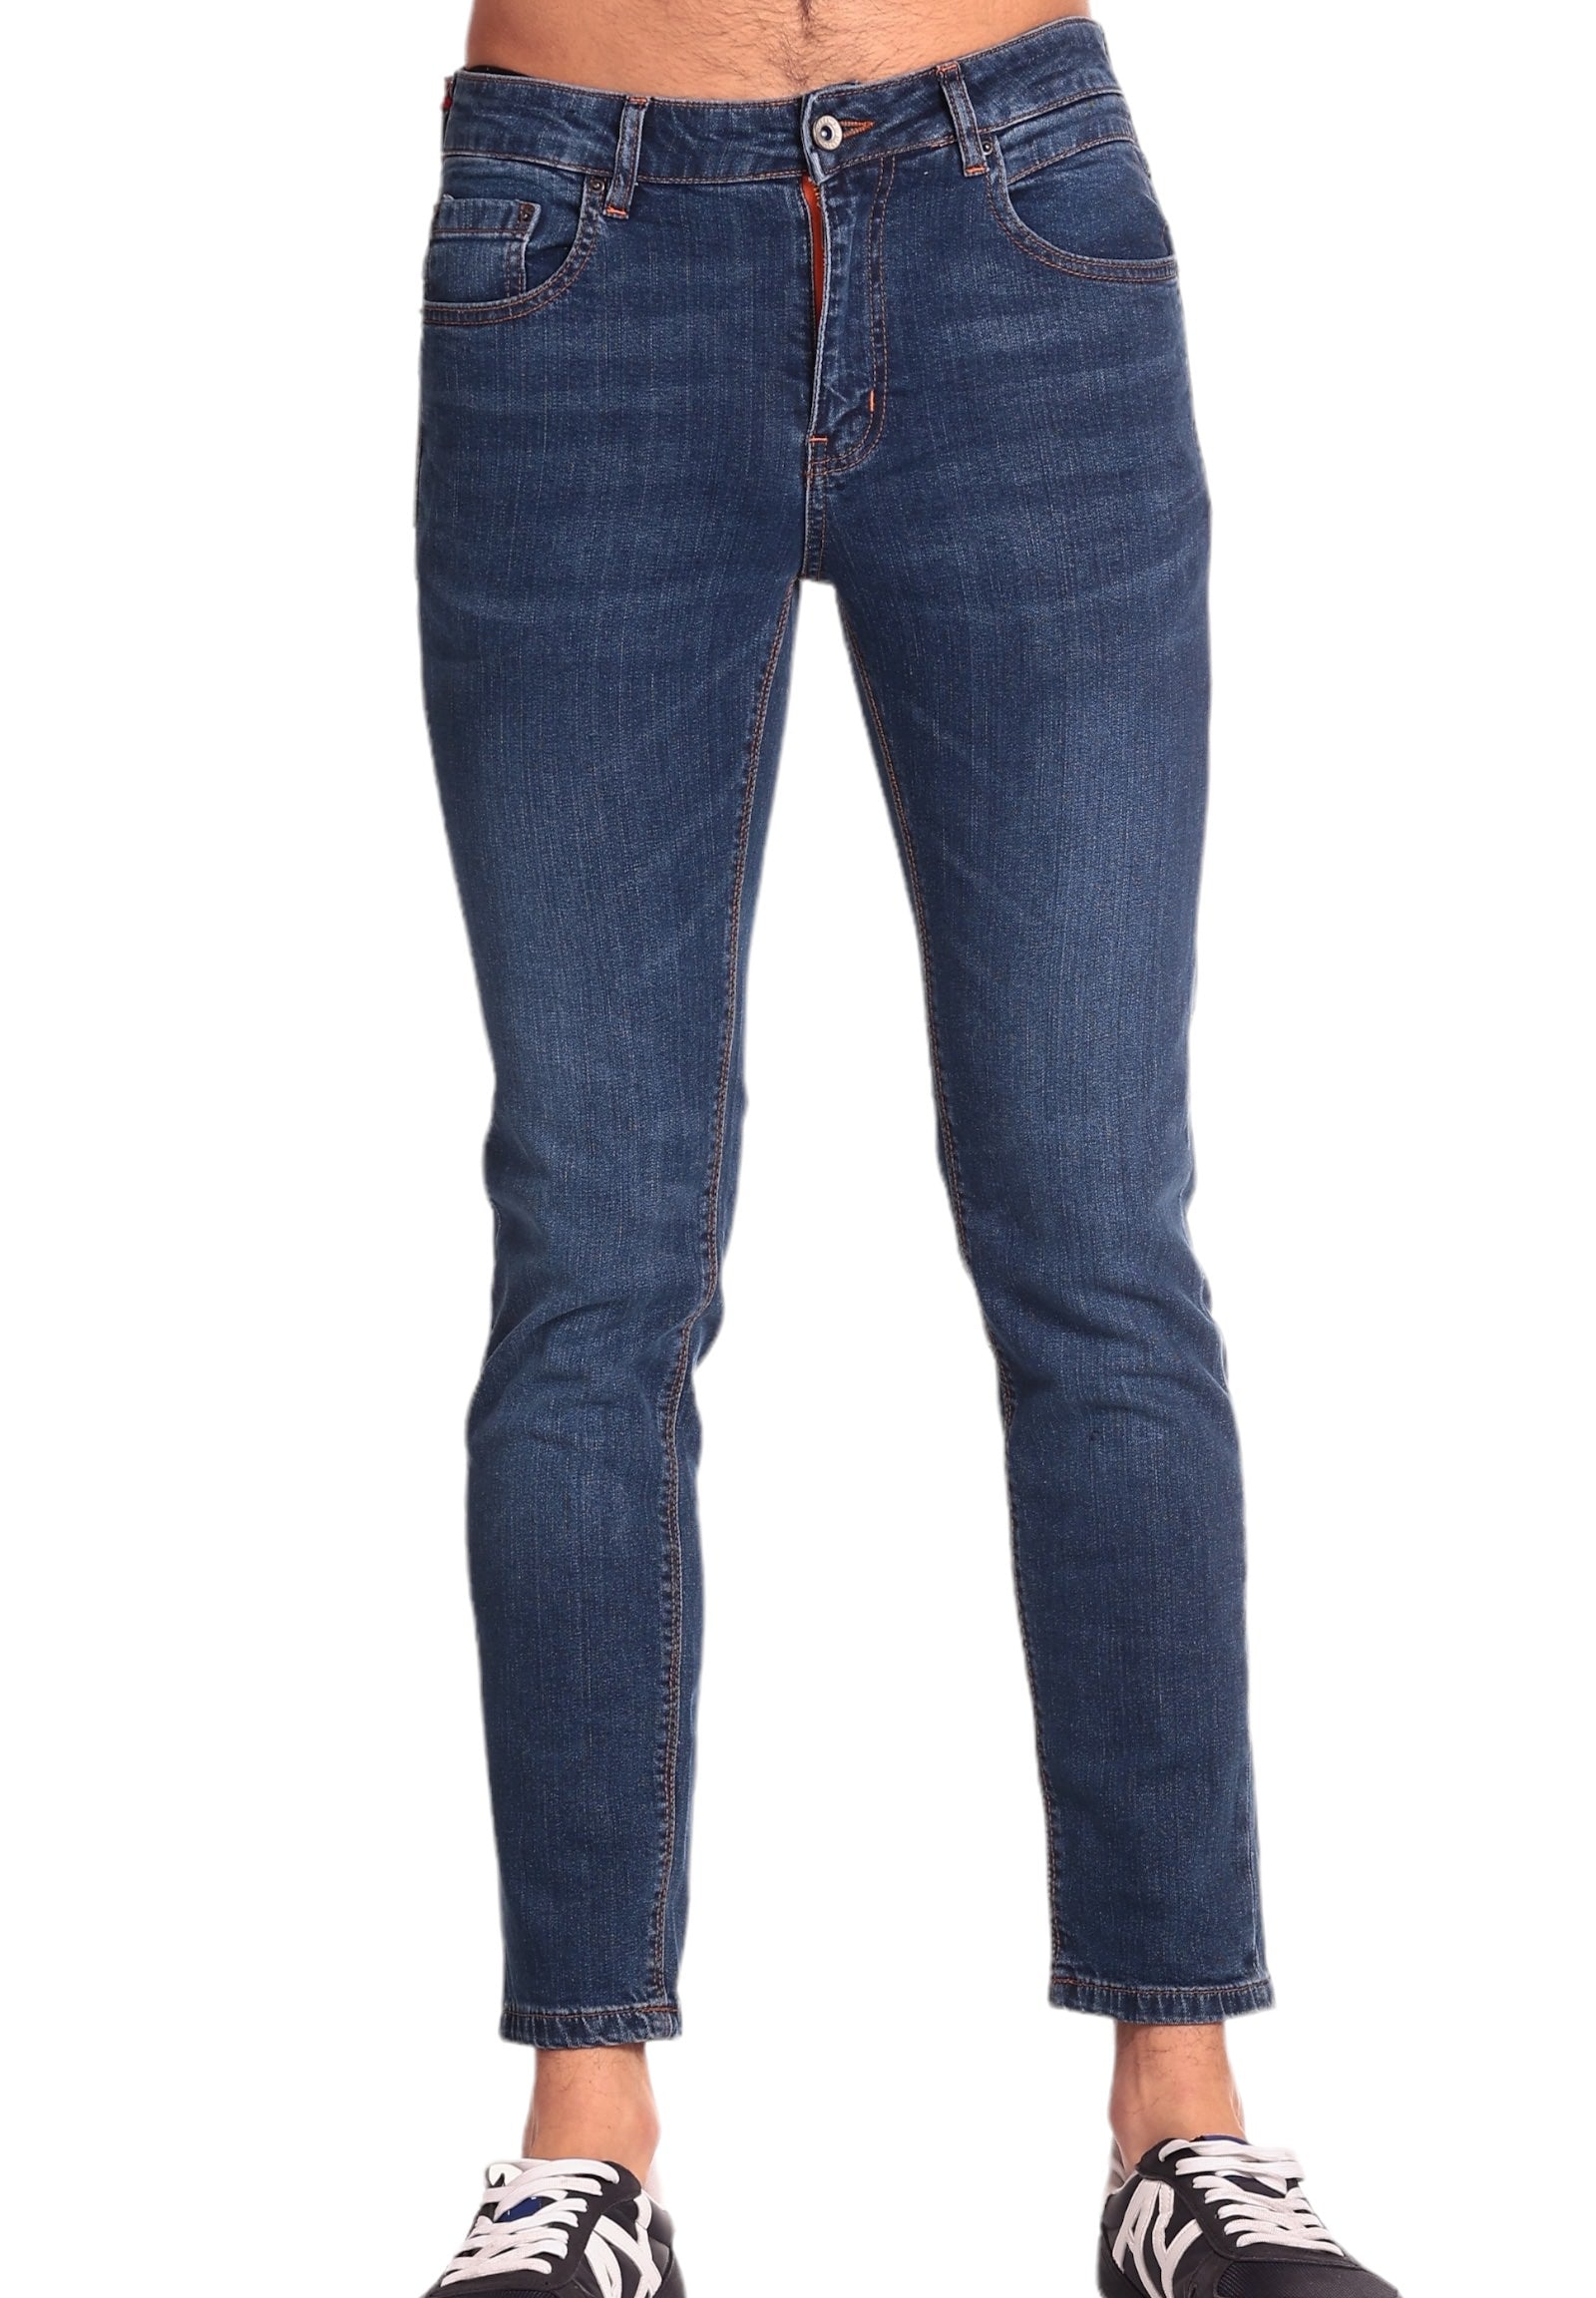 Jeans Mk695010 Variant 1